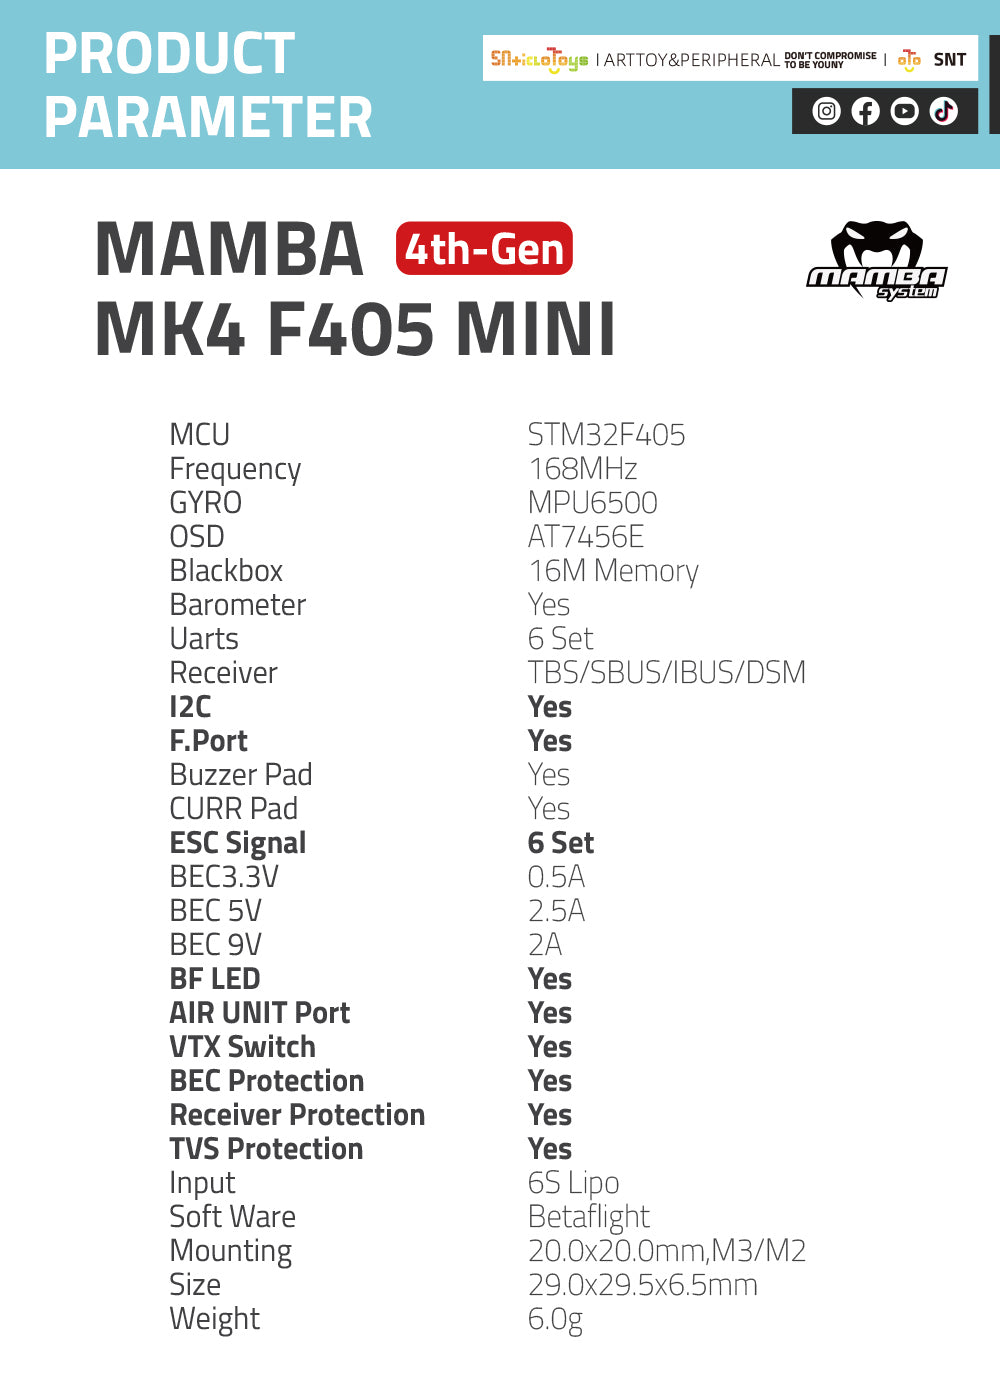 MK4 F405 MINI